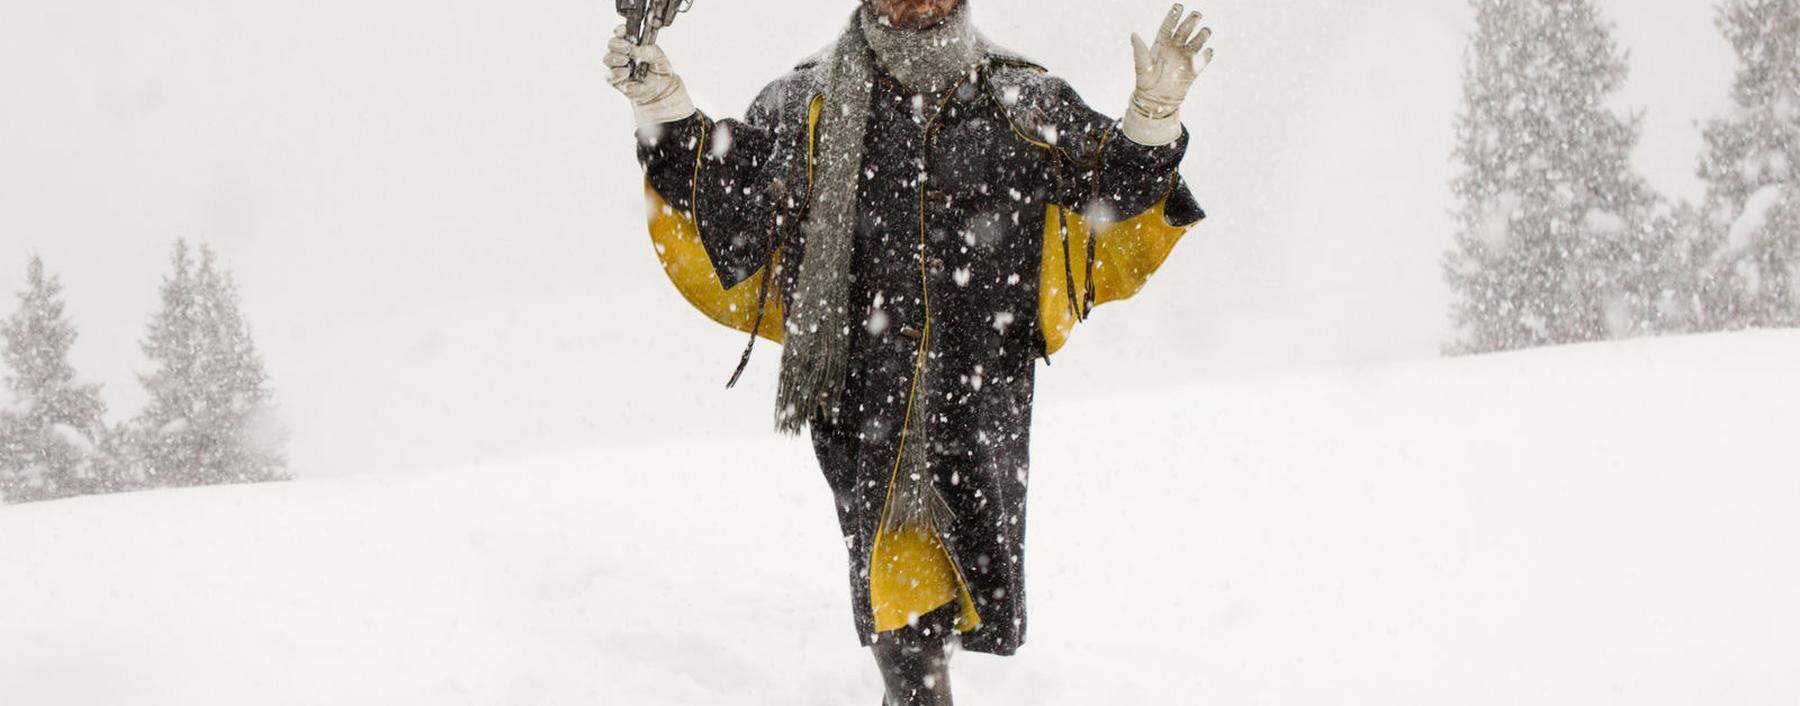  Der Schnee liefert beides – Trost und Bedrohung: Samuel L. Jackson in Quentin Tarantinos „The Hateful Eight“.